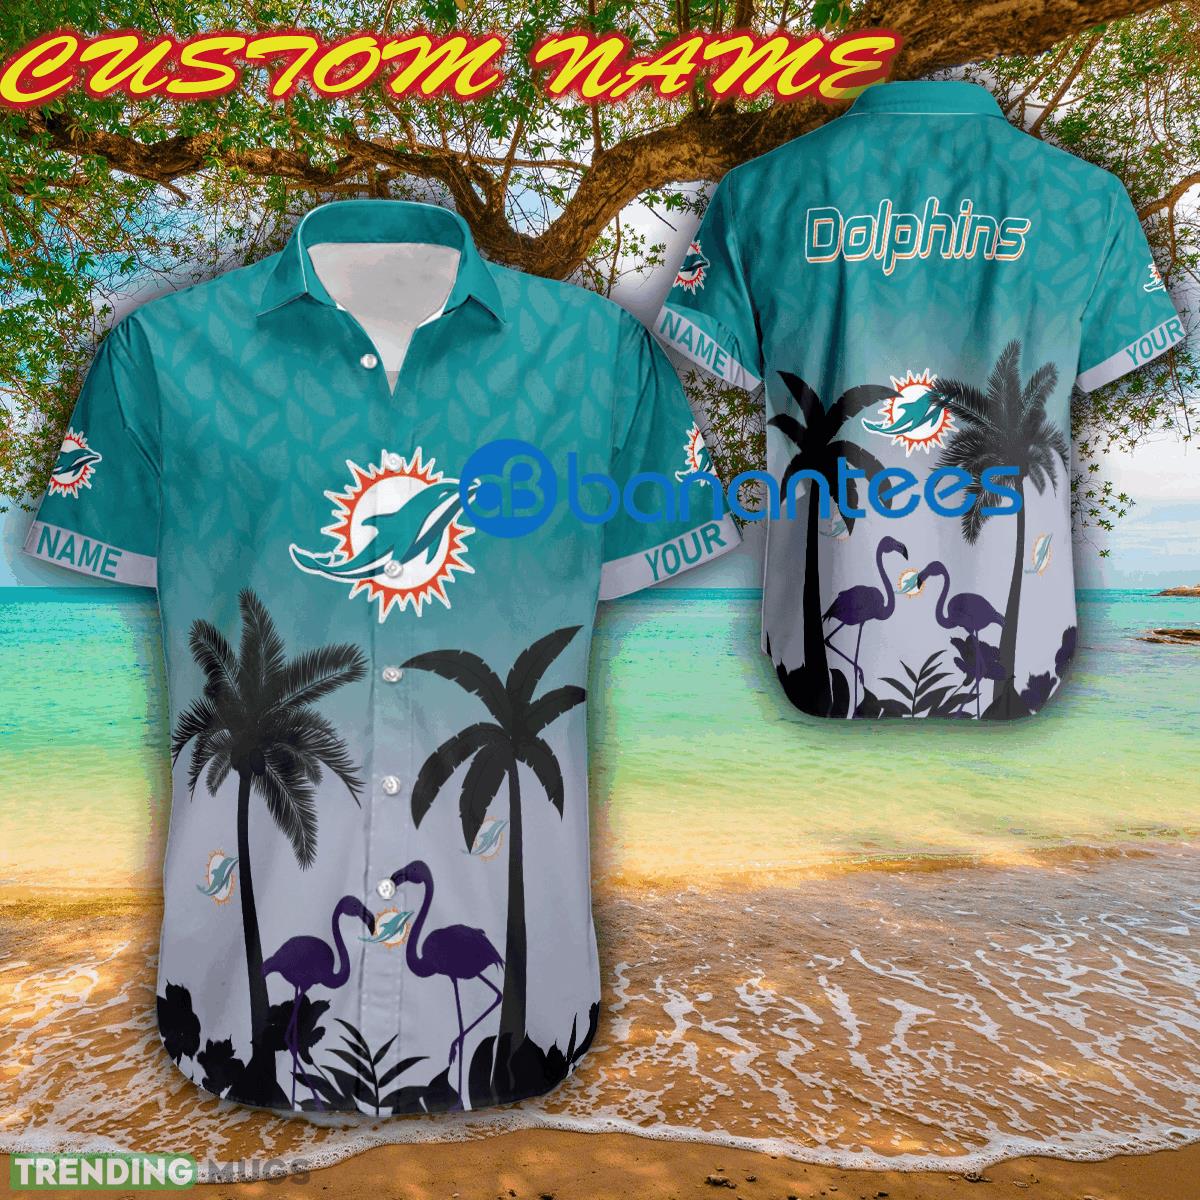 Miami Dolphins Shop - NFL Miami Dolphins Party New Aloha Hawaiian Shirt For Summer